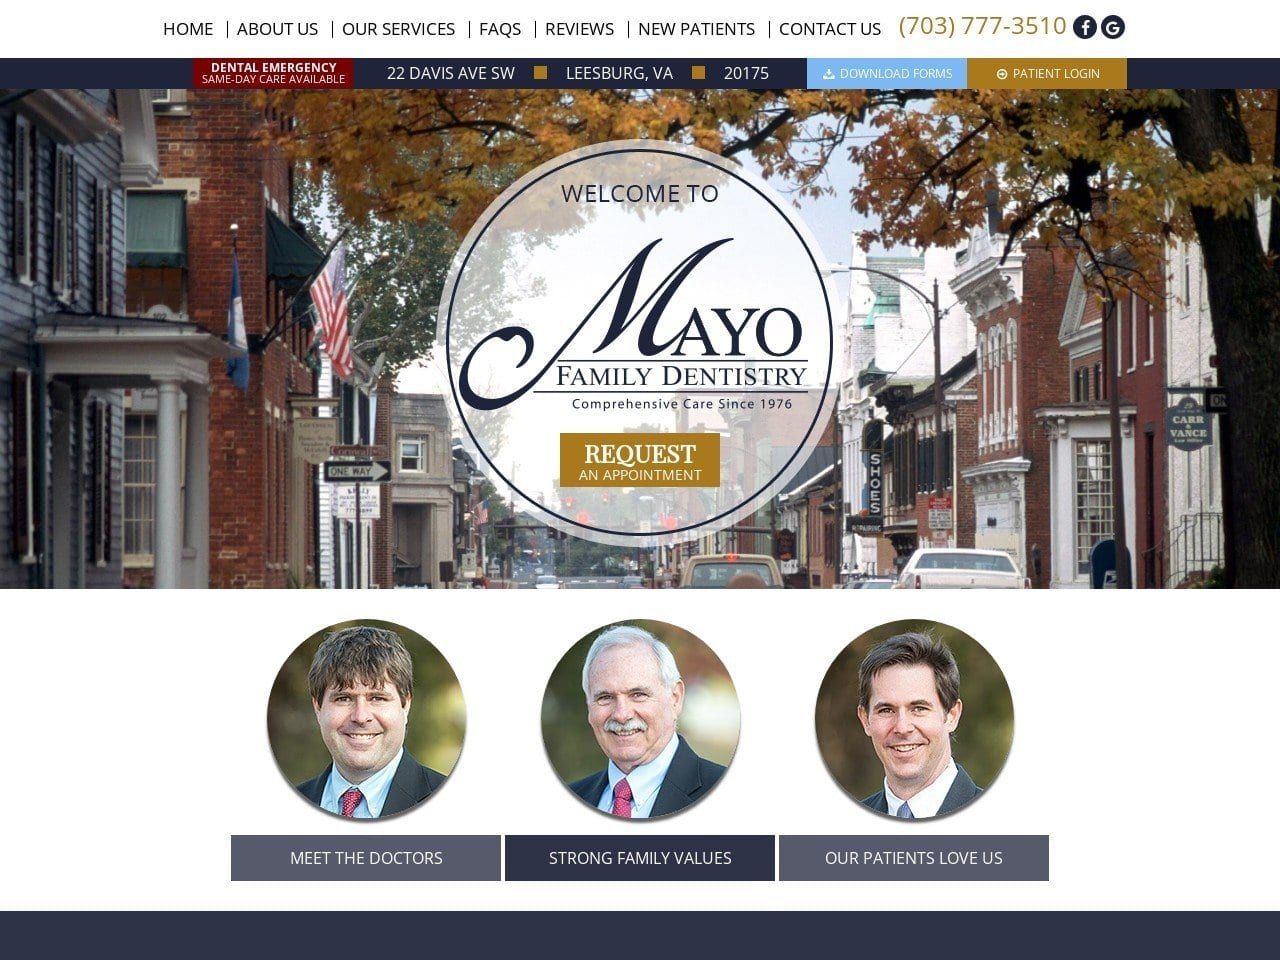 Mayo Family Dentistry Website Screenshot from mayofamilydentistry.com